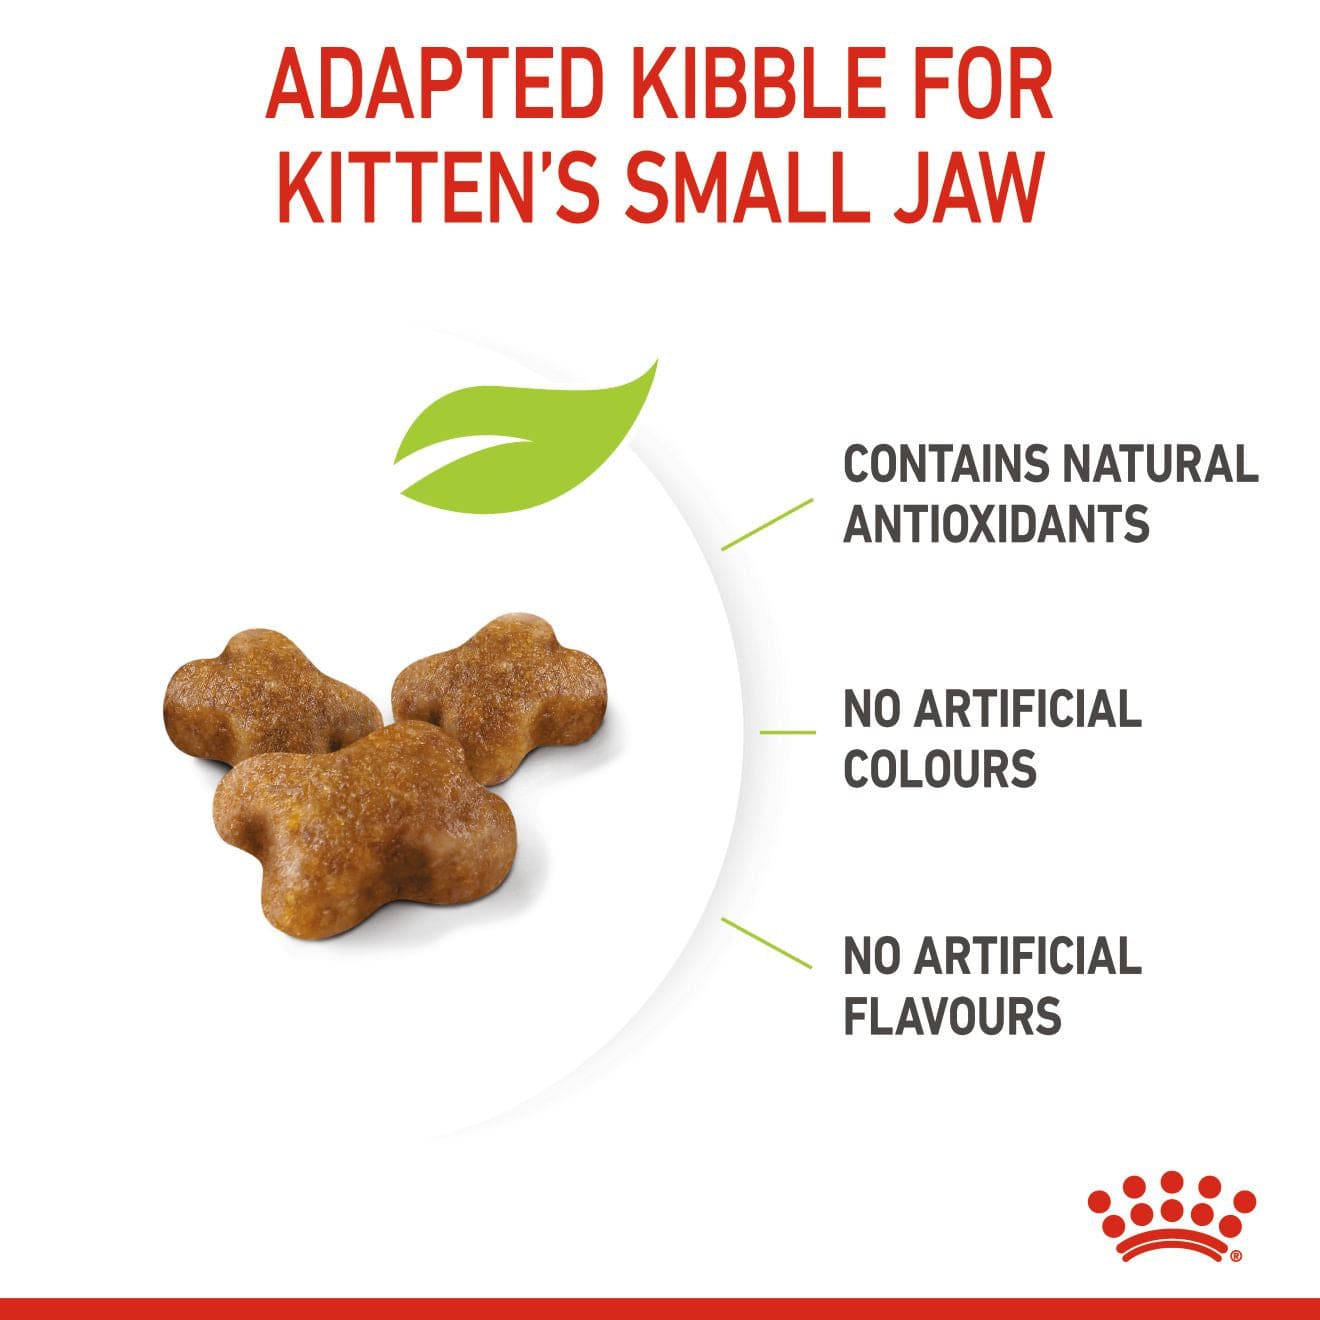 Feline Health Nutrition Kitten 10 KG